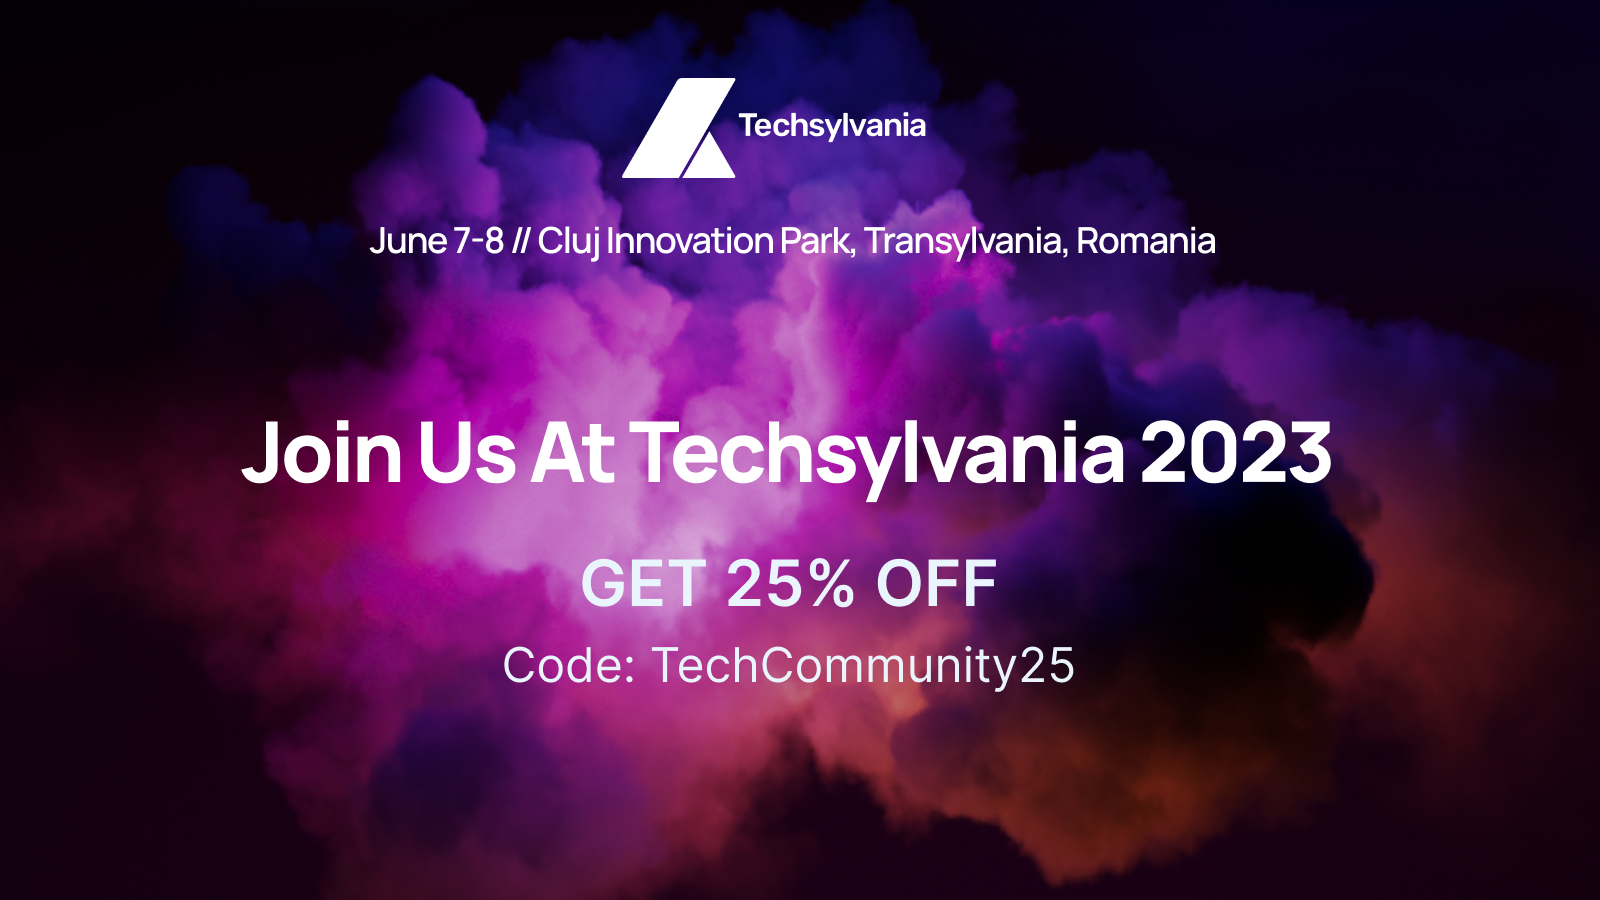 Luna iunie unește pasionații de tehnologie la Techsylvania. Află cum te poți înscrie